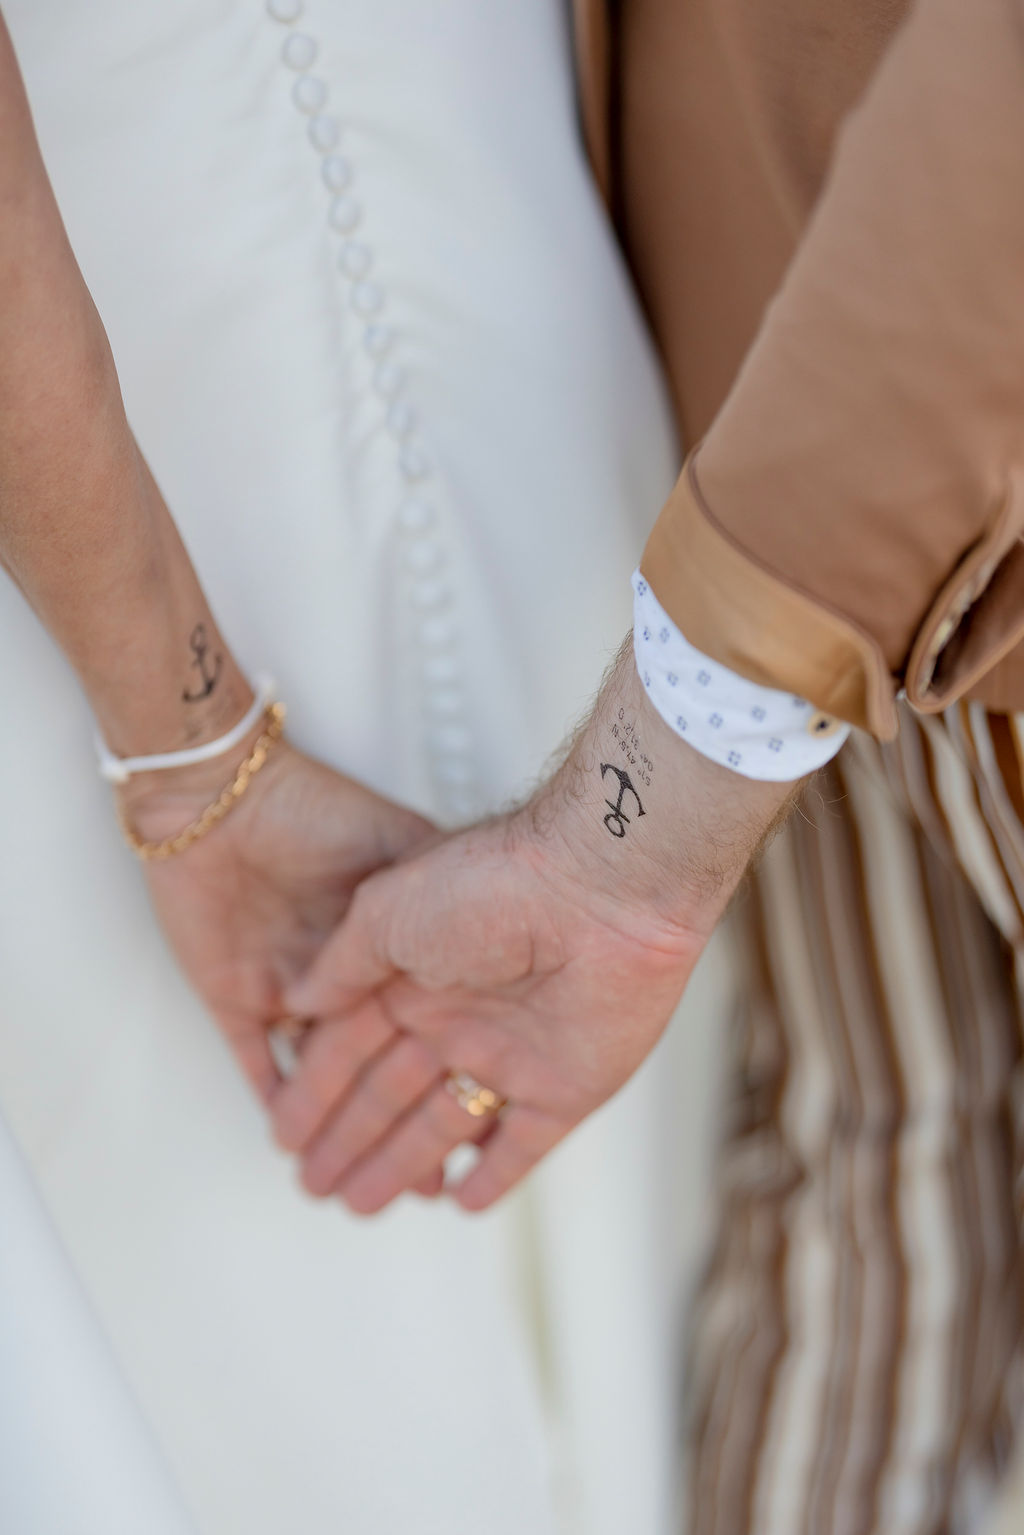 Anker Klebetattoo mit Koordinaten an den Handgelenken von Braut und Bräutigam | Hochzeitsplanung: Sagt Ja